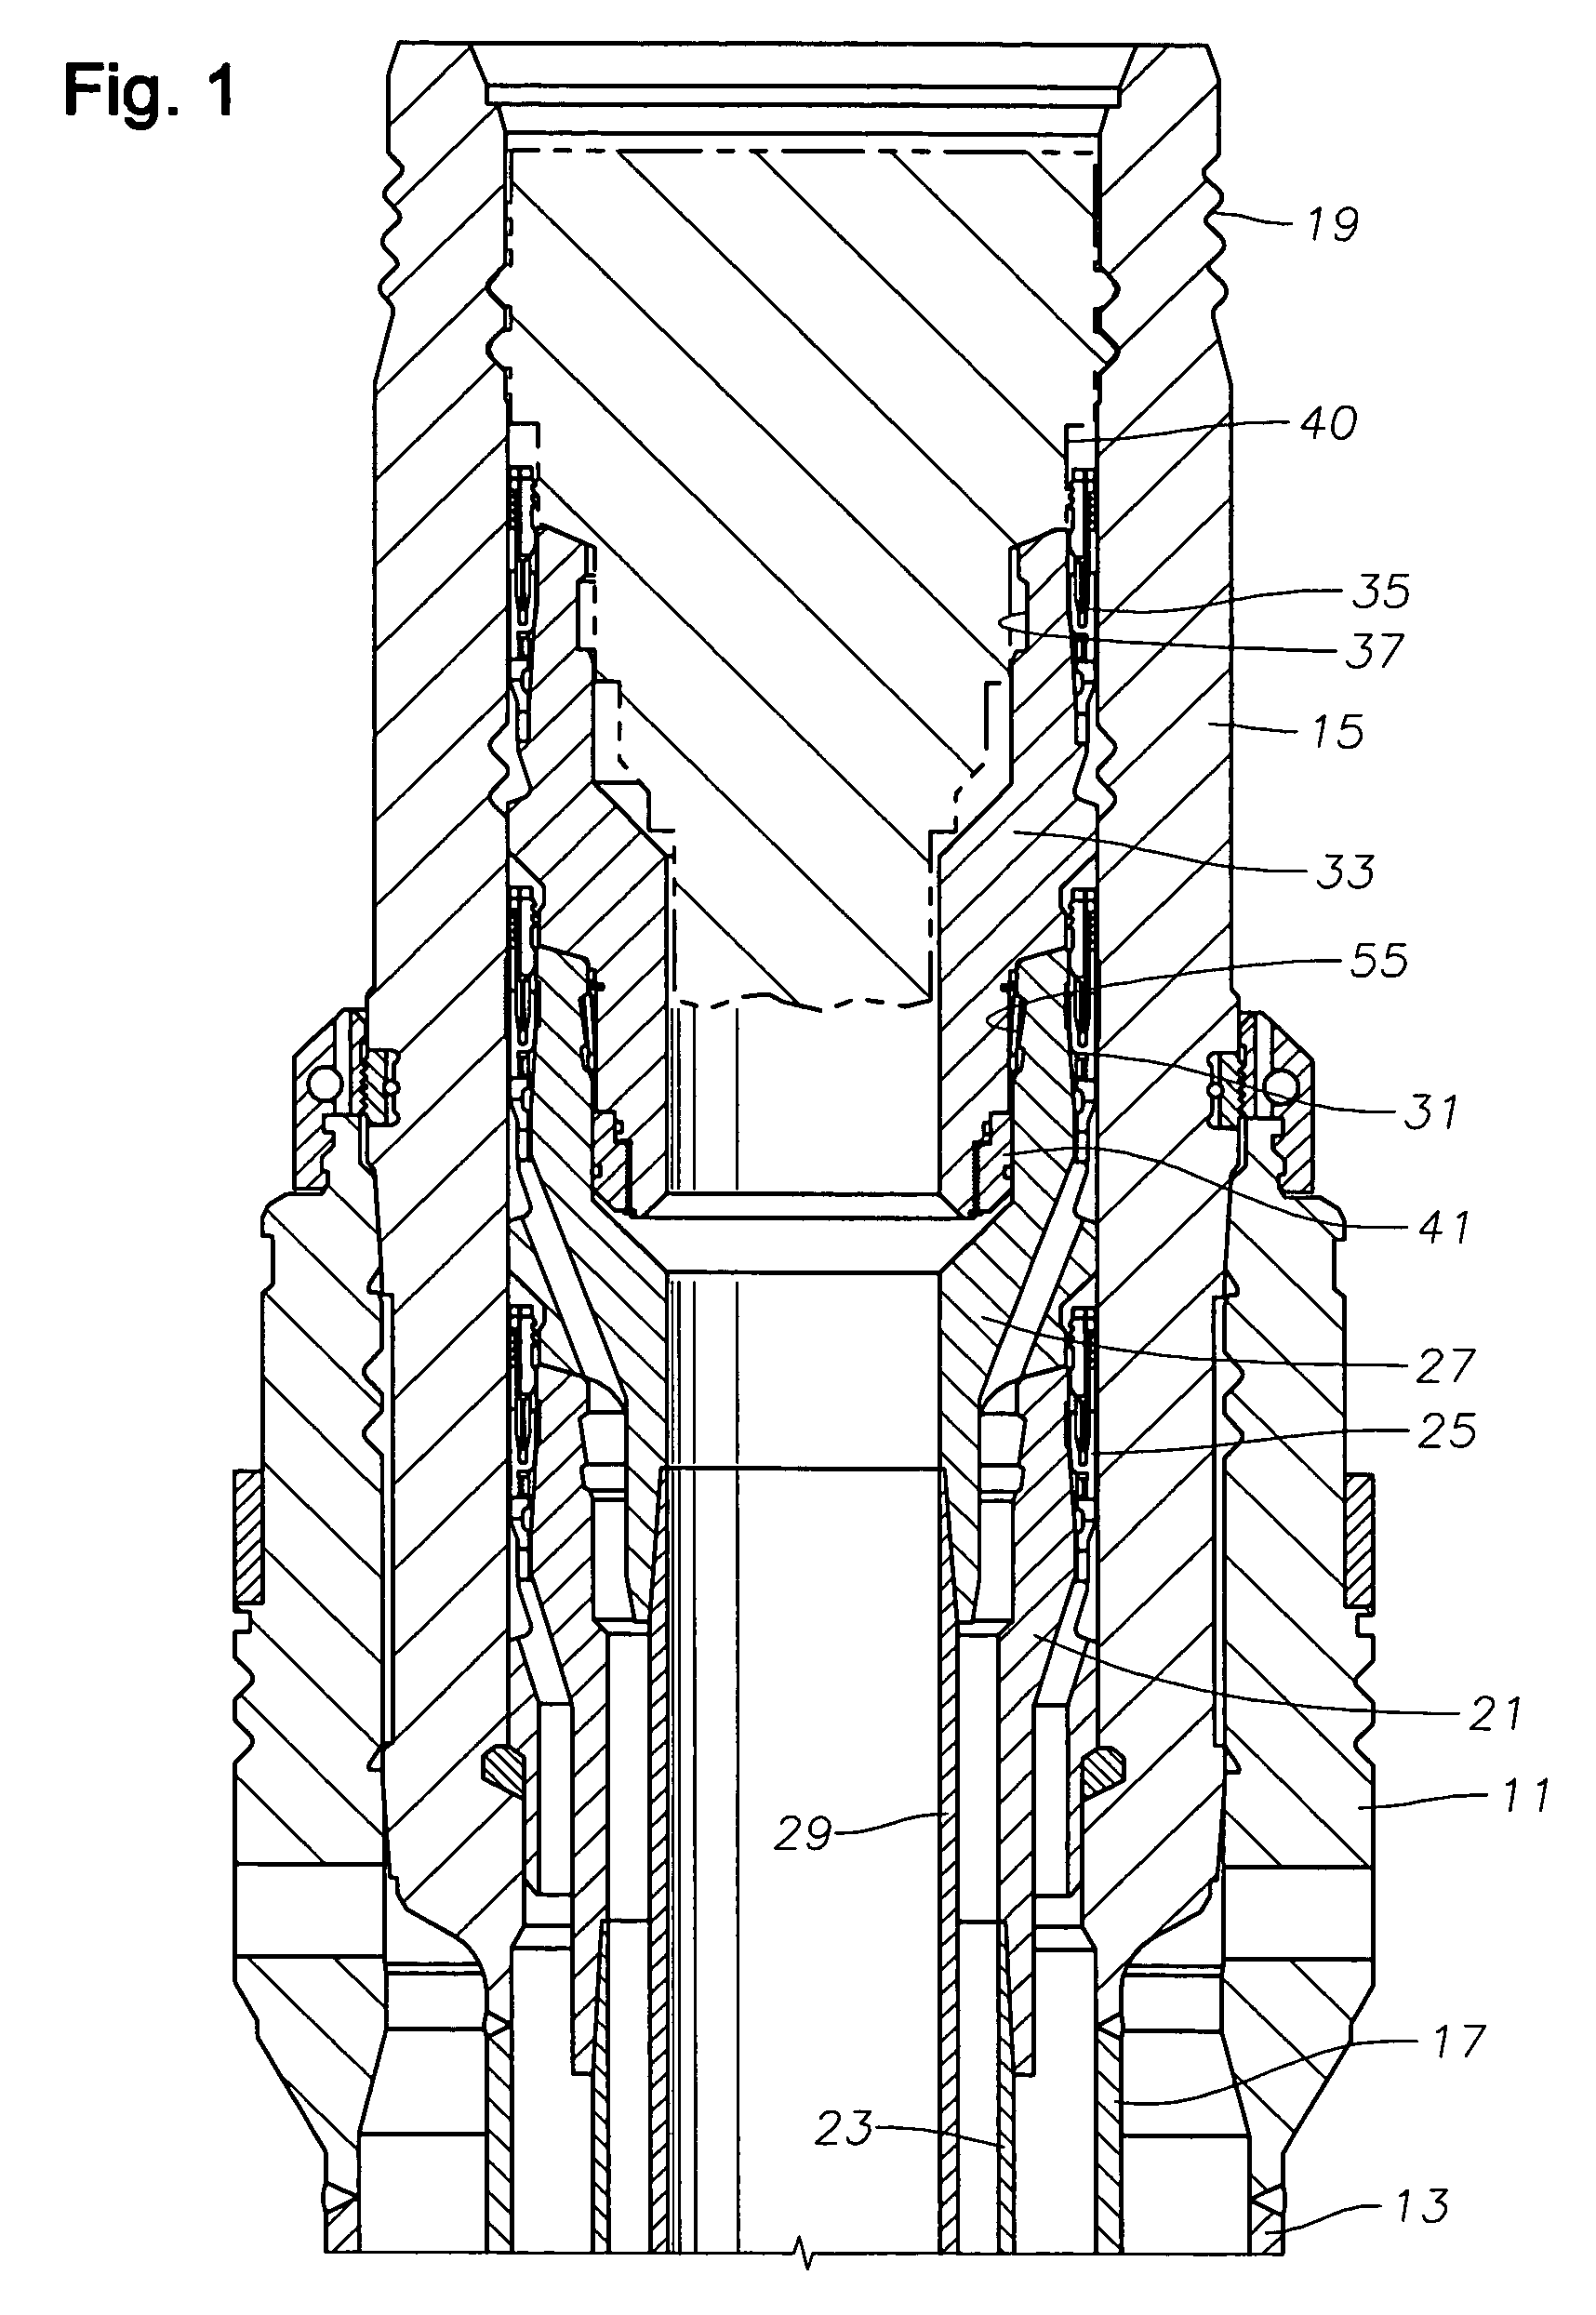 Metal-to-metal seal for bridging hanger or tieback connection